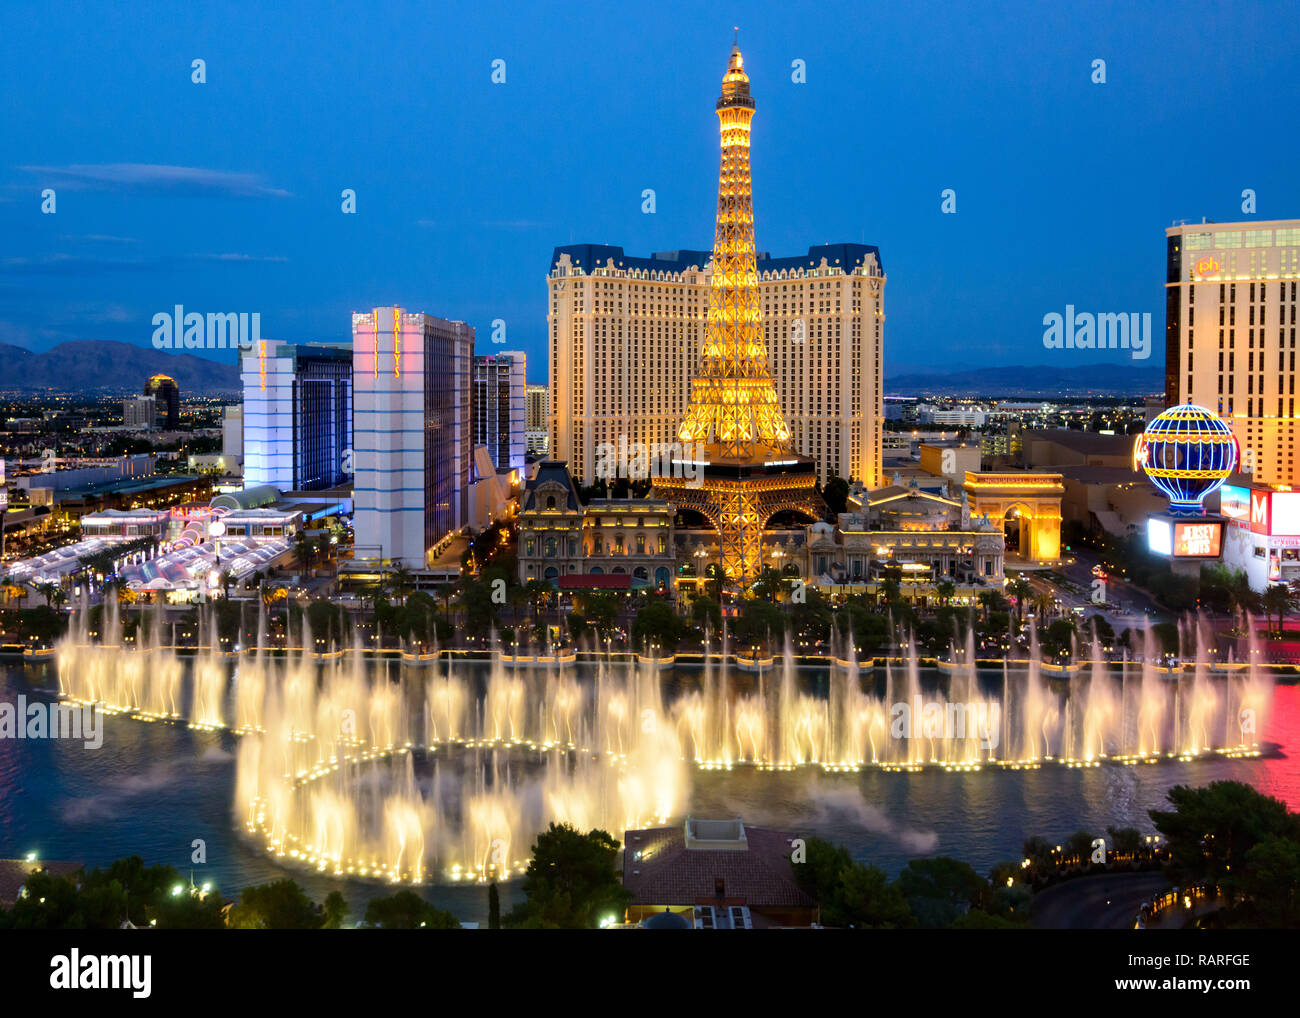 Bellagio Fountains, Las Vegas Stock Photo